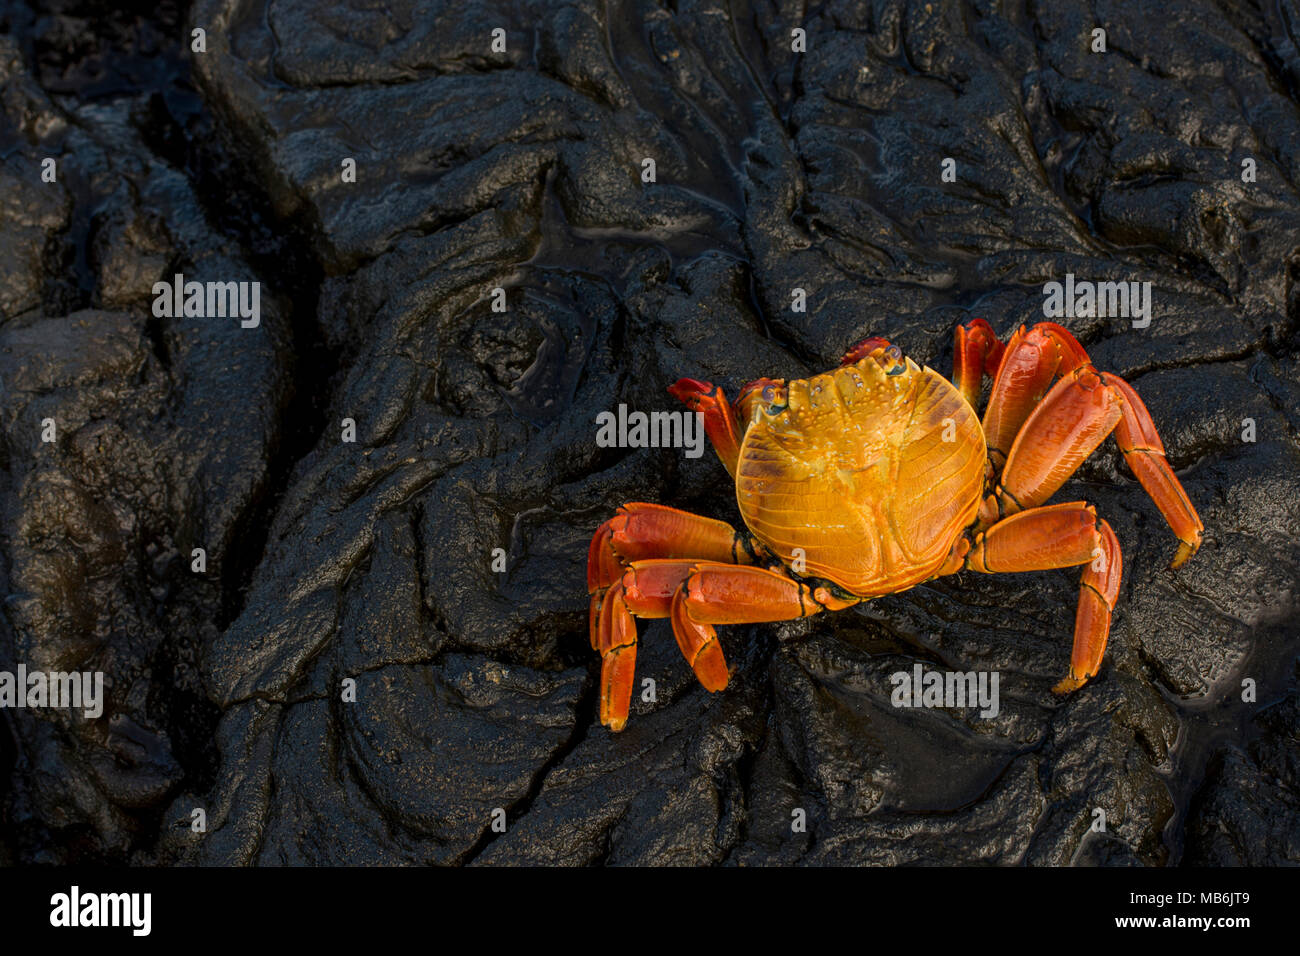 A sally lightfoot crab dalle isole Galapagos, questi granchi carismatico sono una presenza costante sulle coste rocciose delle isole Galapagos. Foto Stock